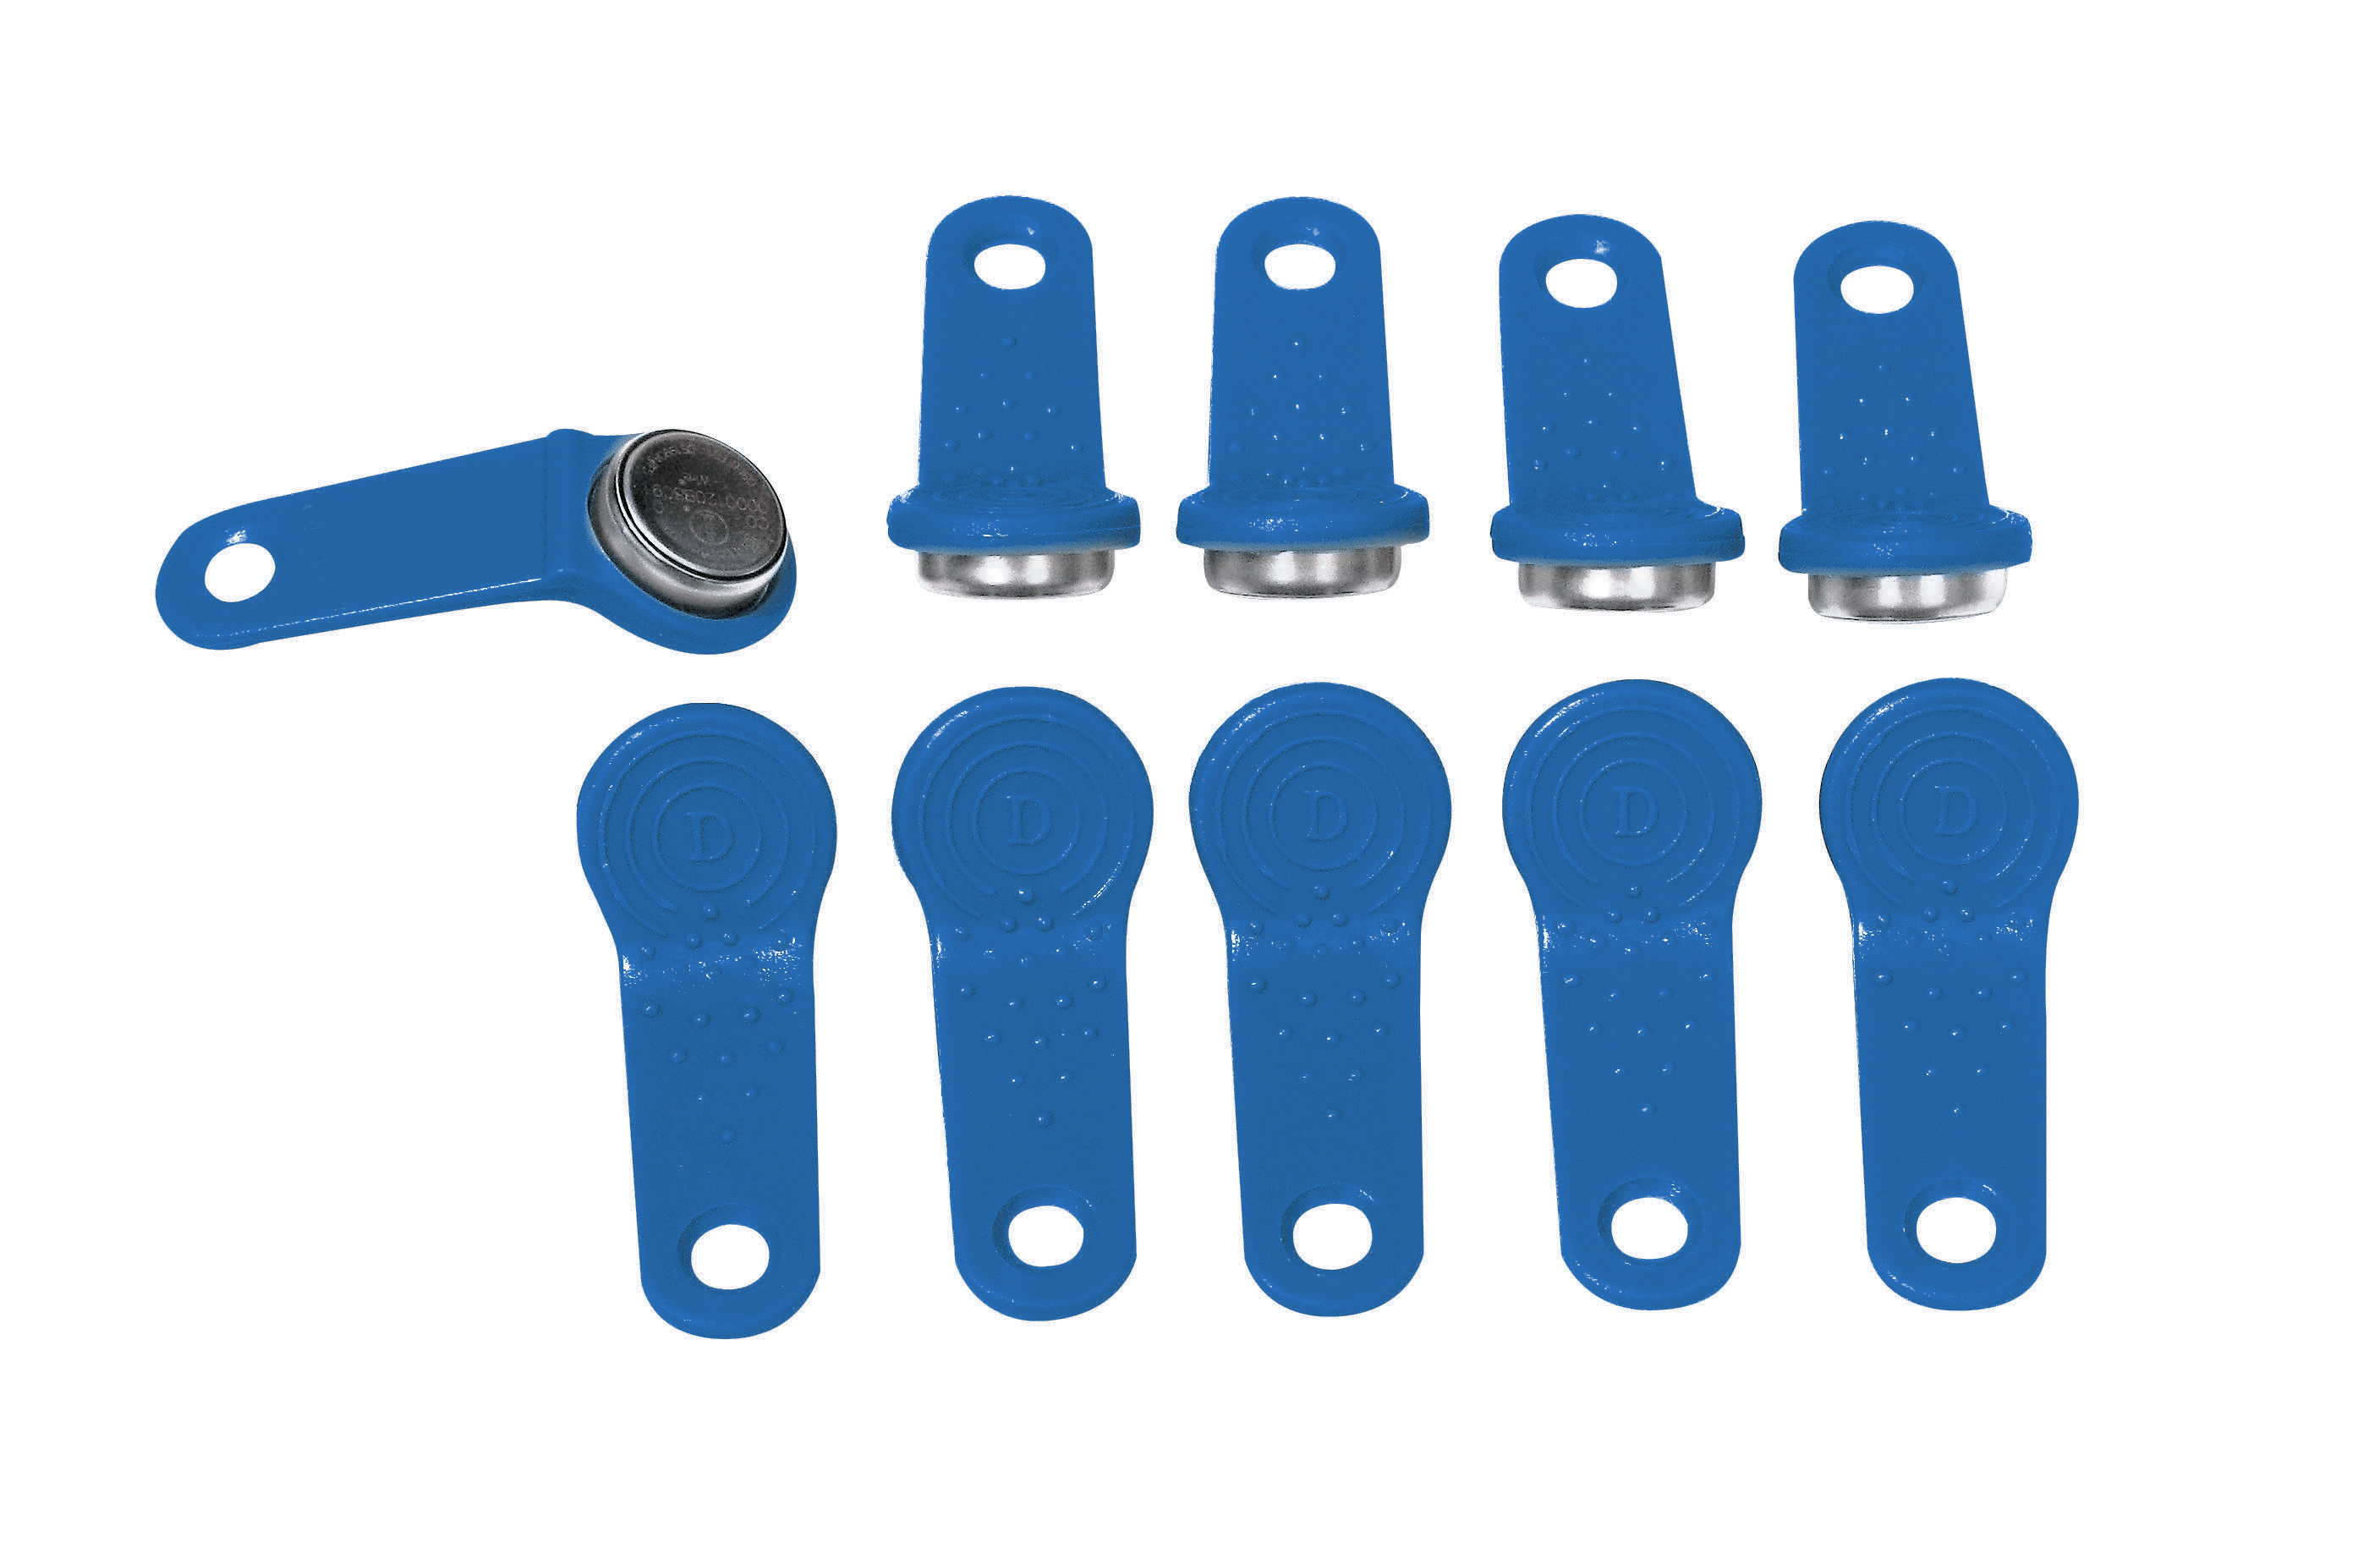 Zuwa SSM - Magnetschlüssel für Fahrzeuge 1 Satz blau - P17299